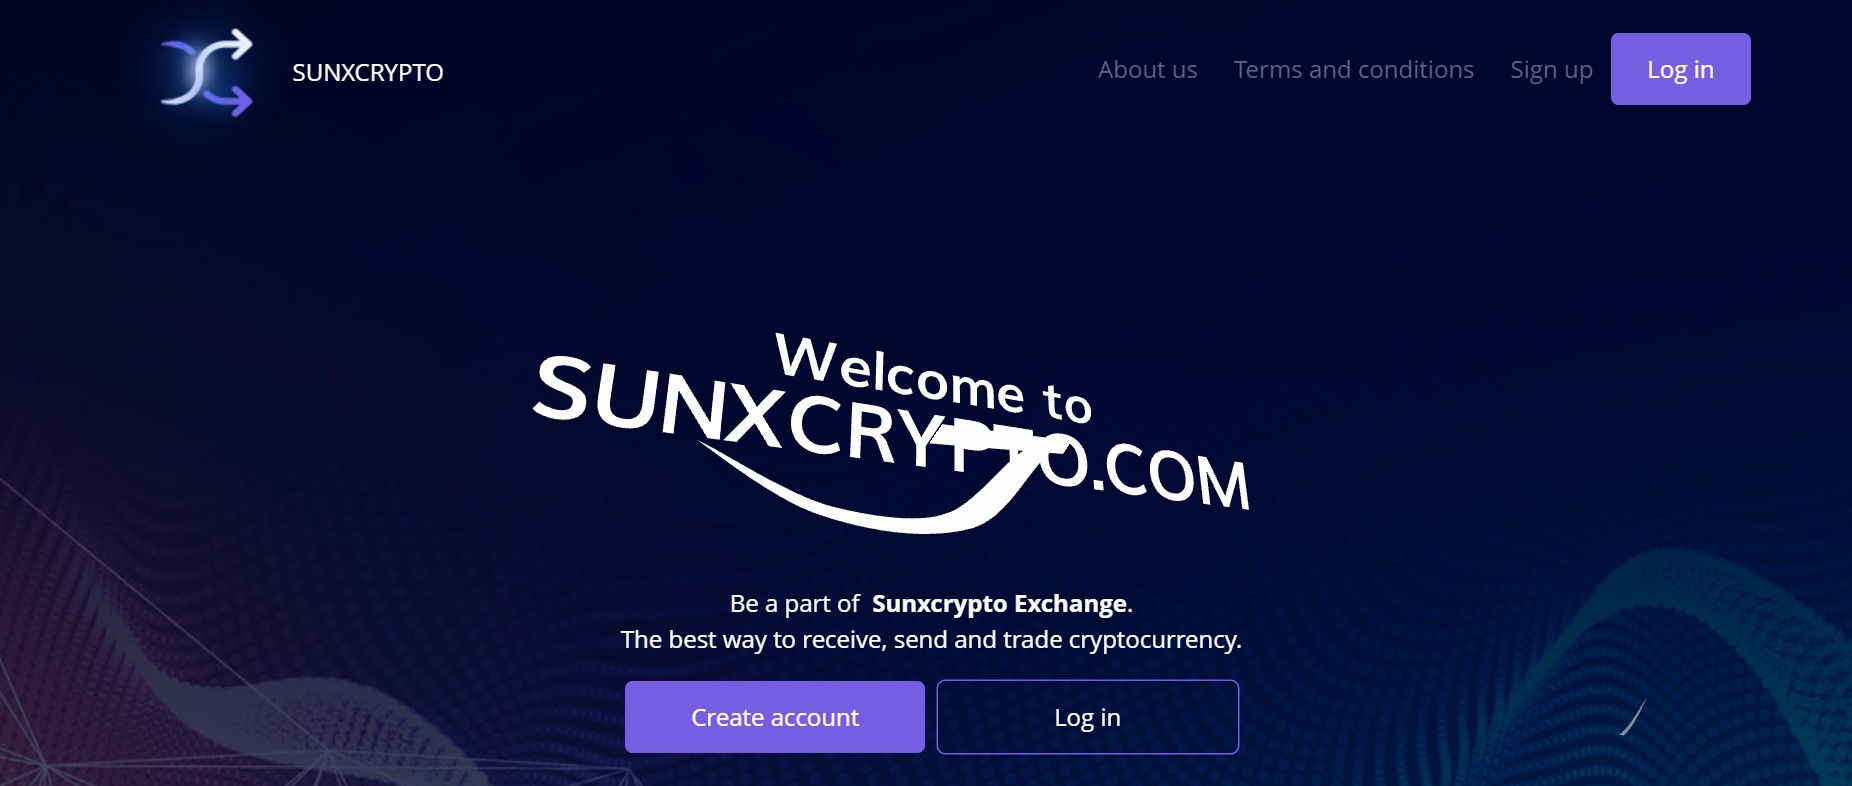 Sunxcrypto 